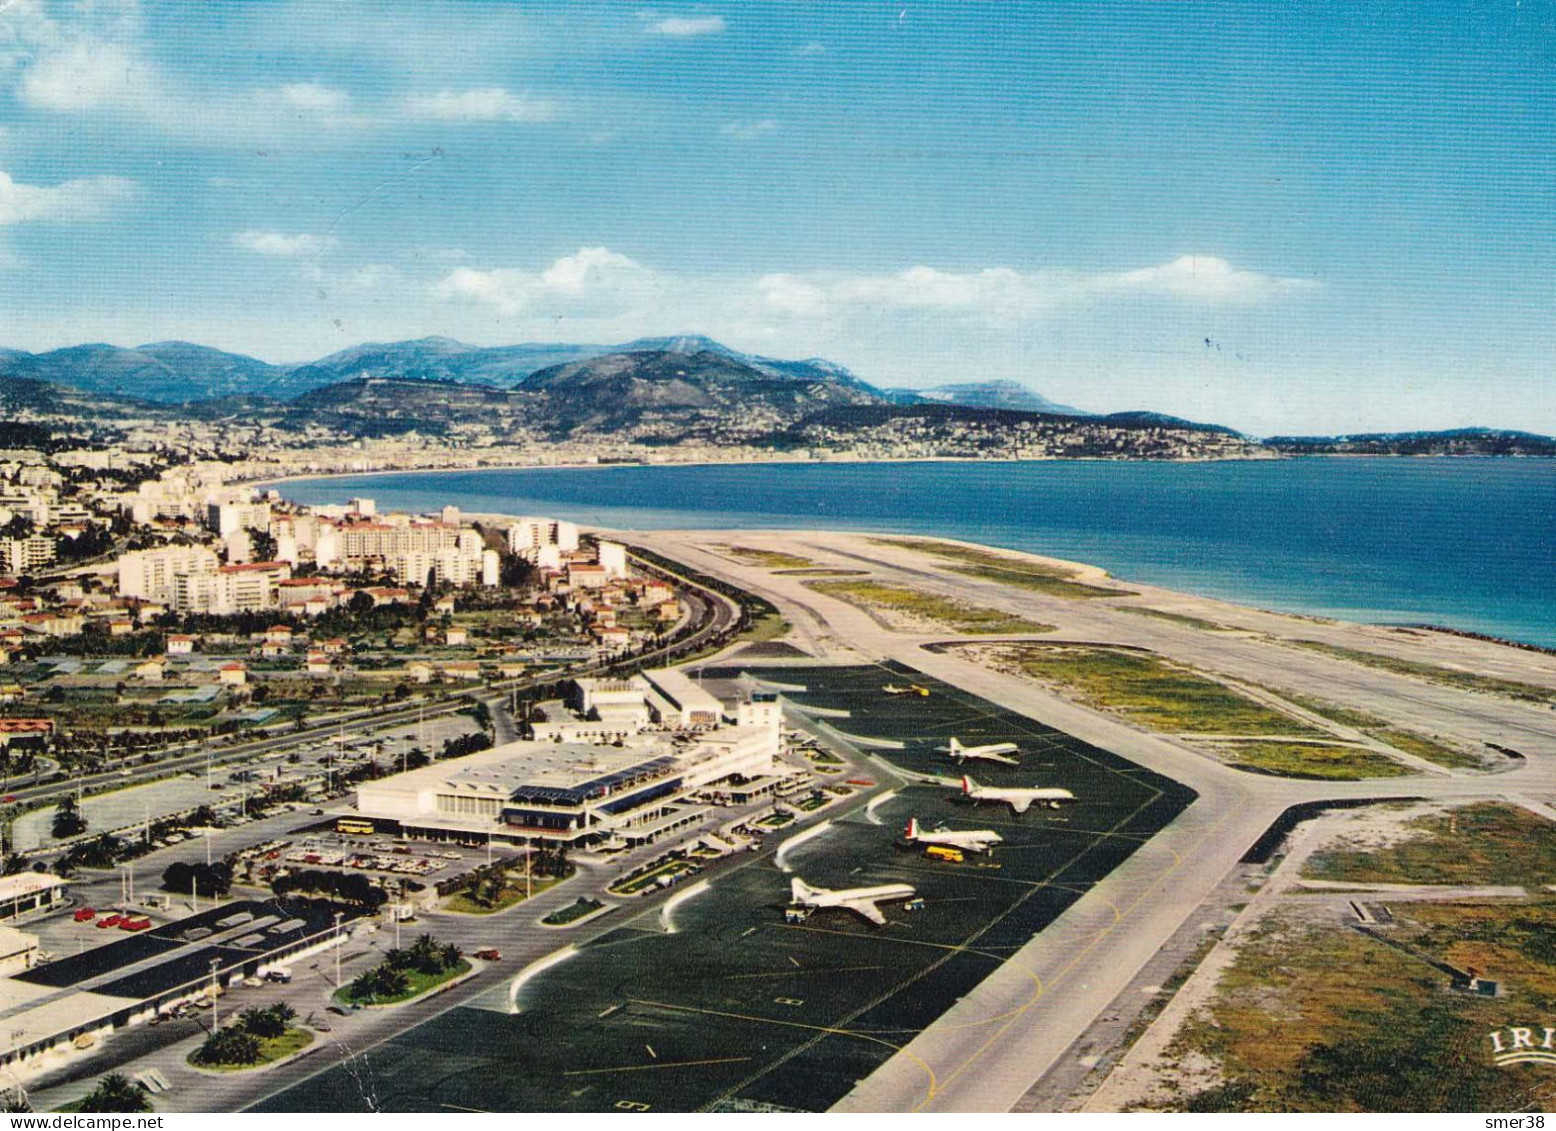 06 - NICE - Aéroport De Nice Cote-d'azur, La Baie Des Anges... - Transport (air) - Airport